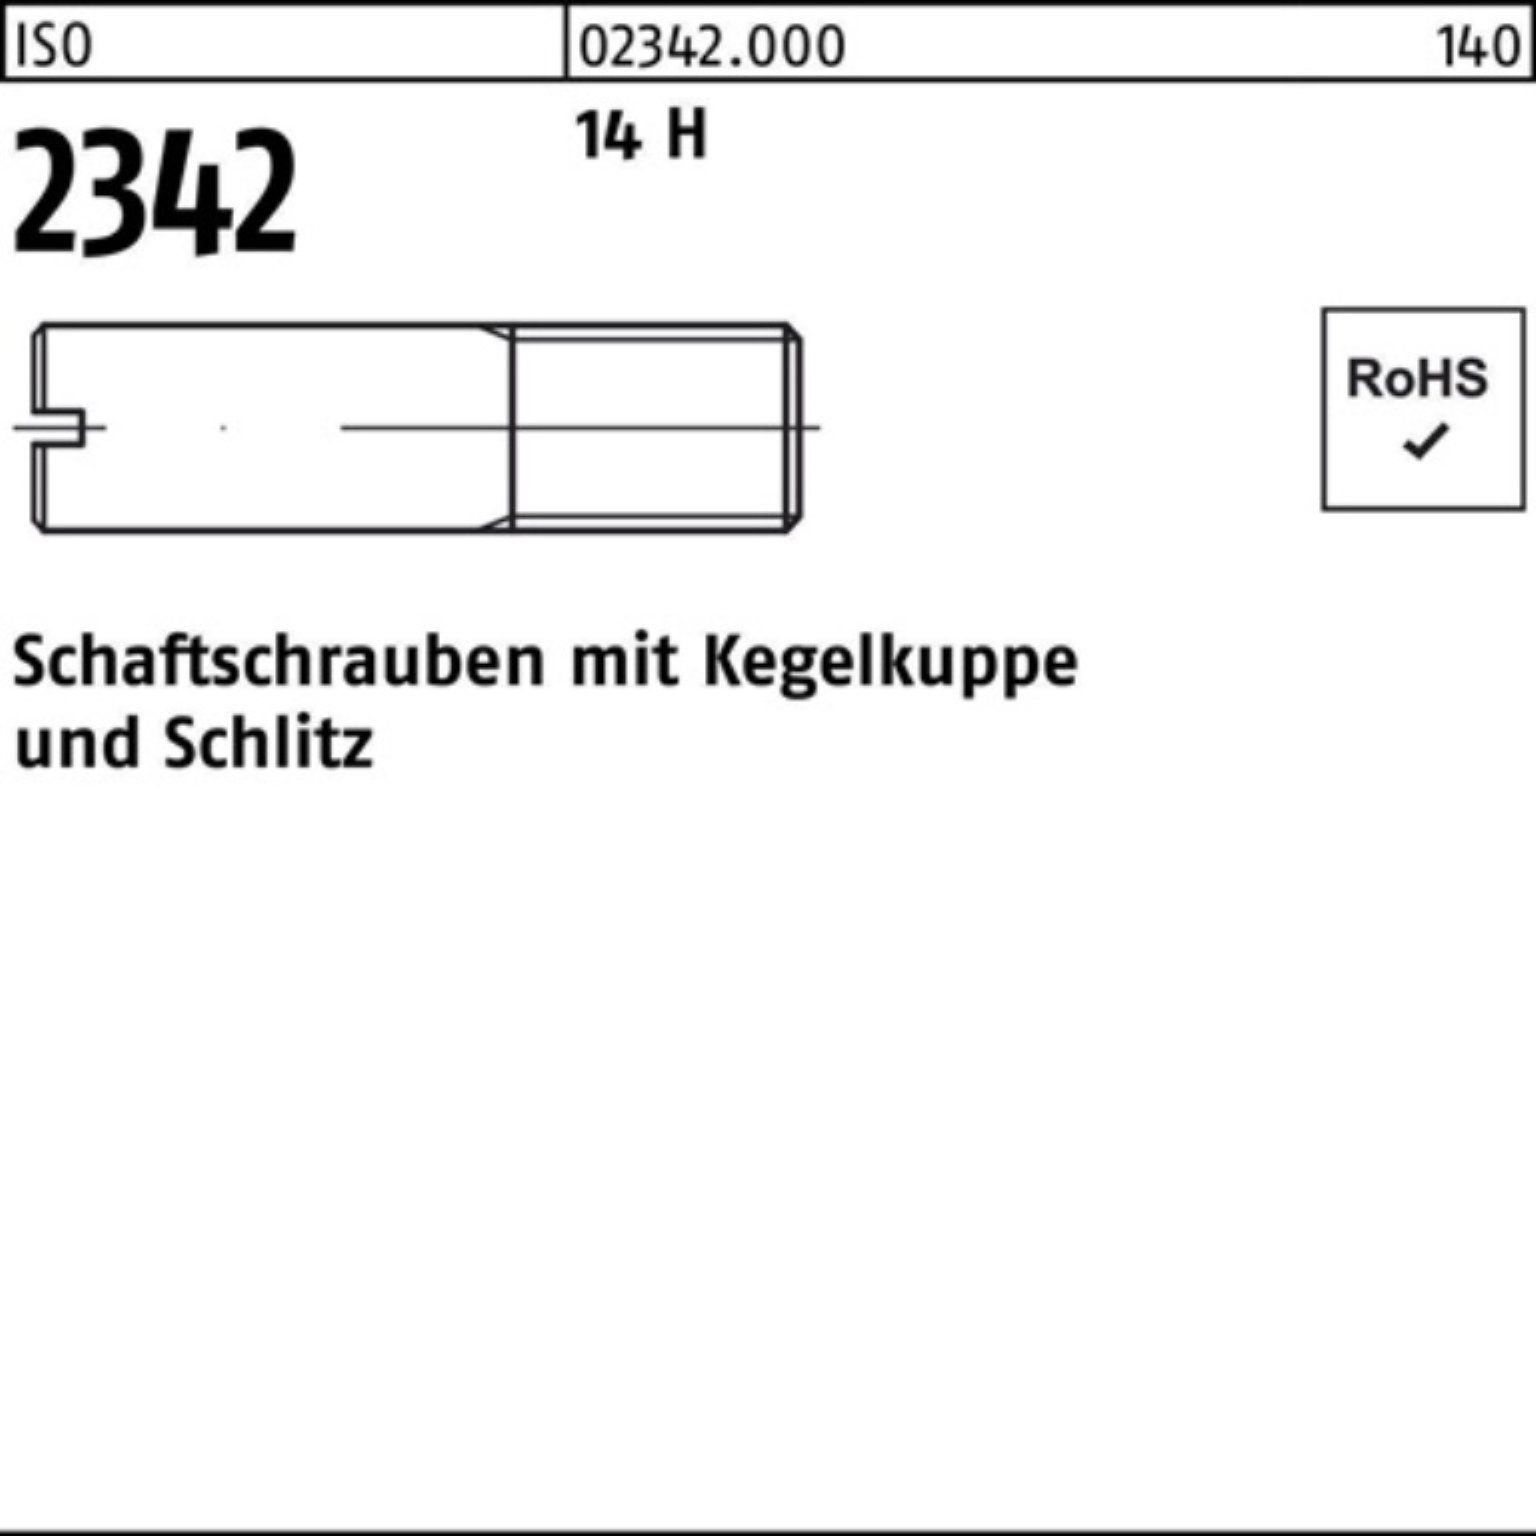 Reyher Schraube 100er Schaftschraube Pack ISO 50 H Kegelkuppe/Schlitz 2342 M12x 40 14